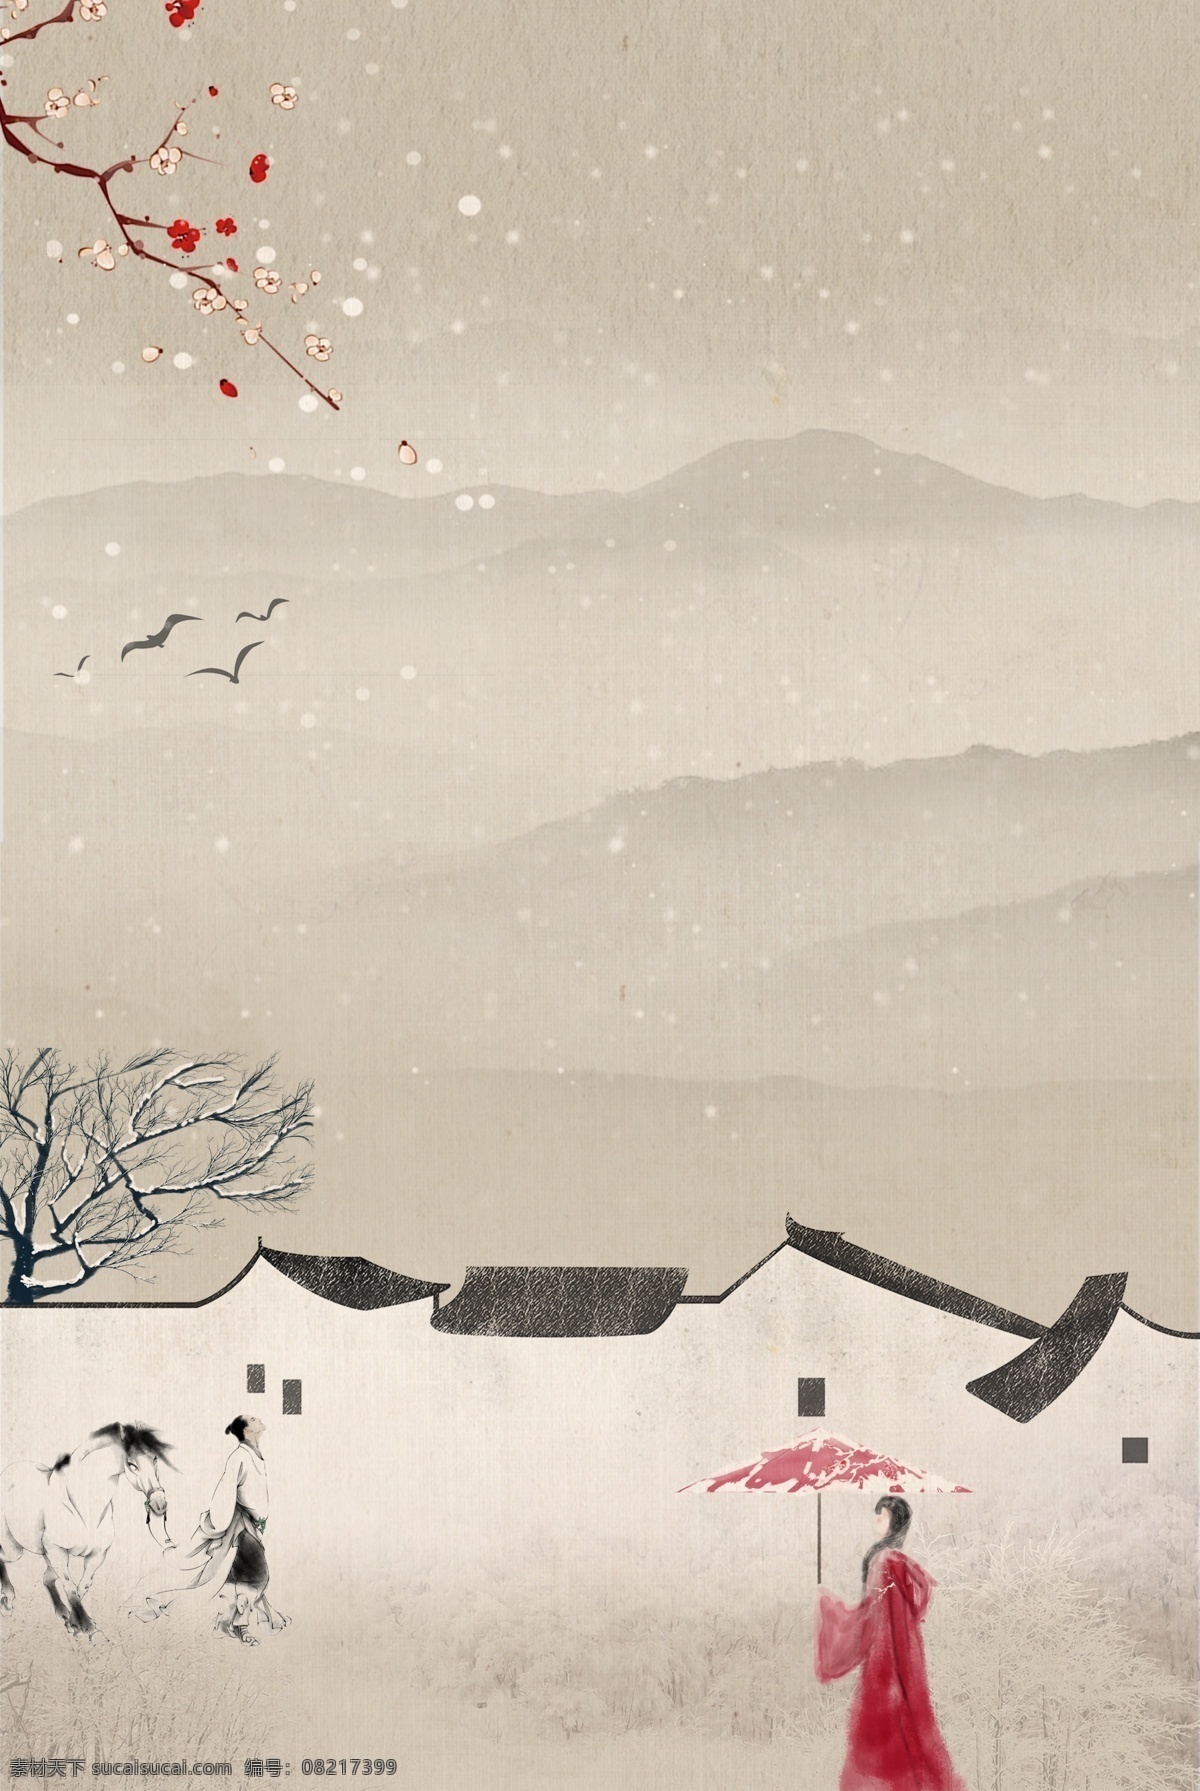 典雅 古风 雪景 海报 背景 复古 中国风 文艺 质感 纹理 水墨 气韵